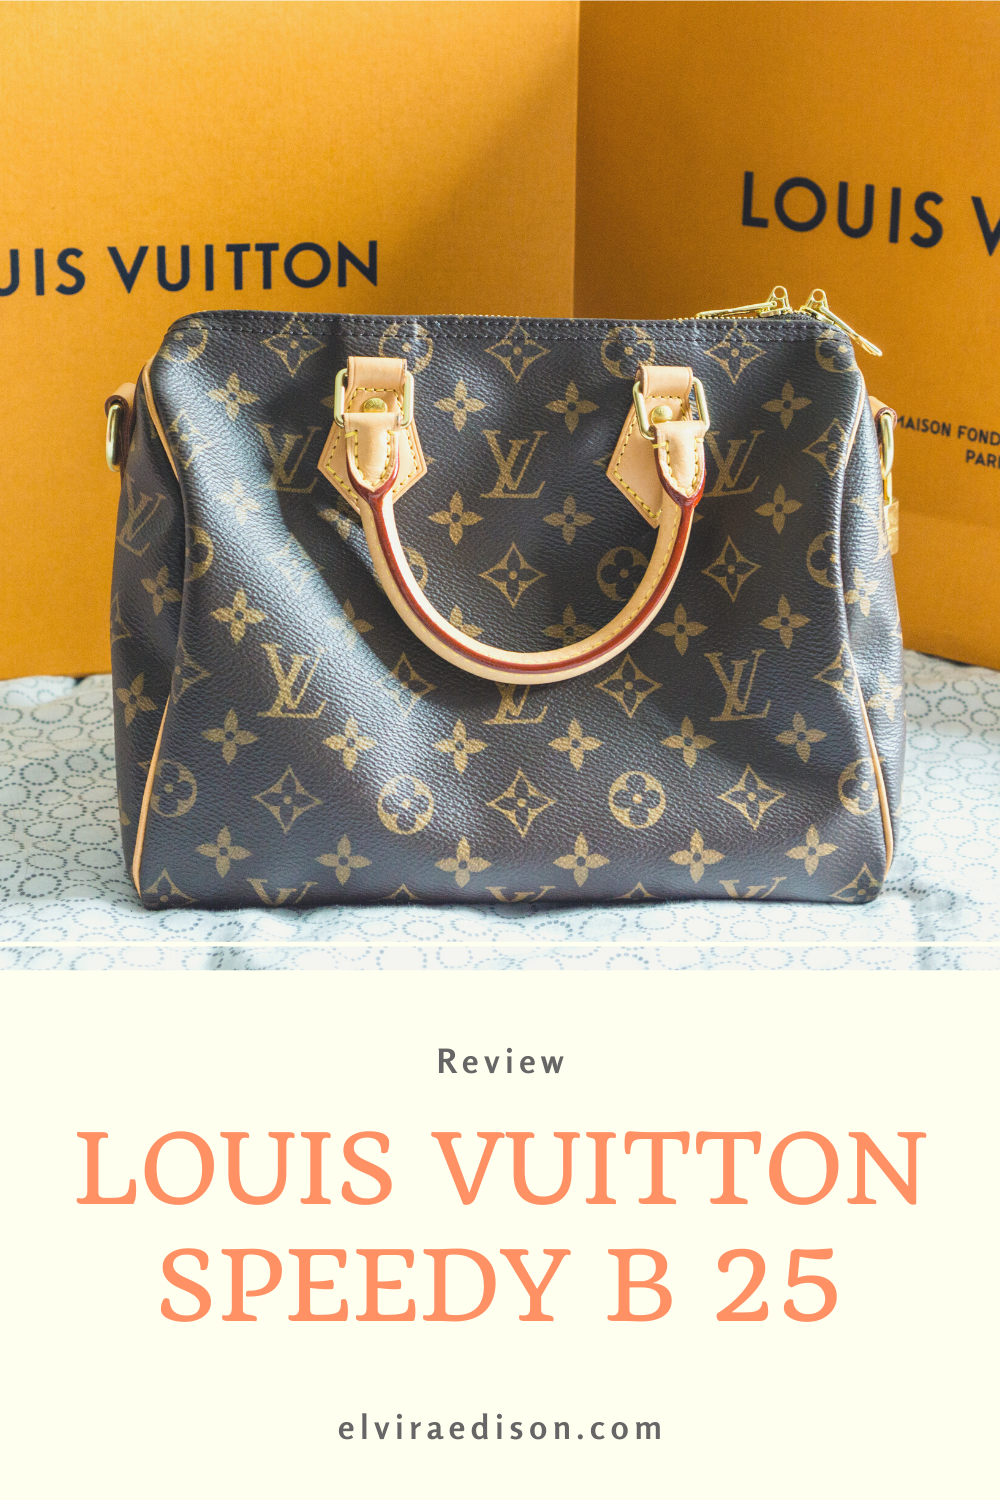 Louis Vuitton Speedy B 25, 30, & 35 Comparison/Review 2017 